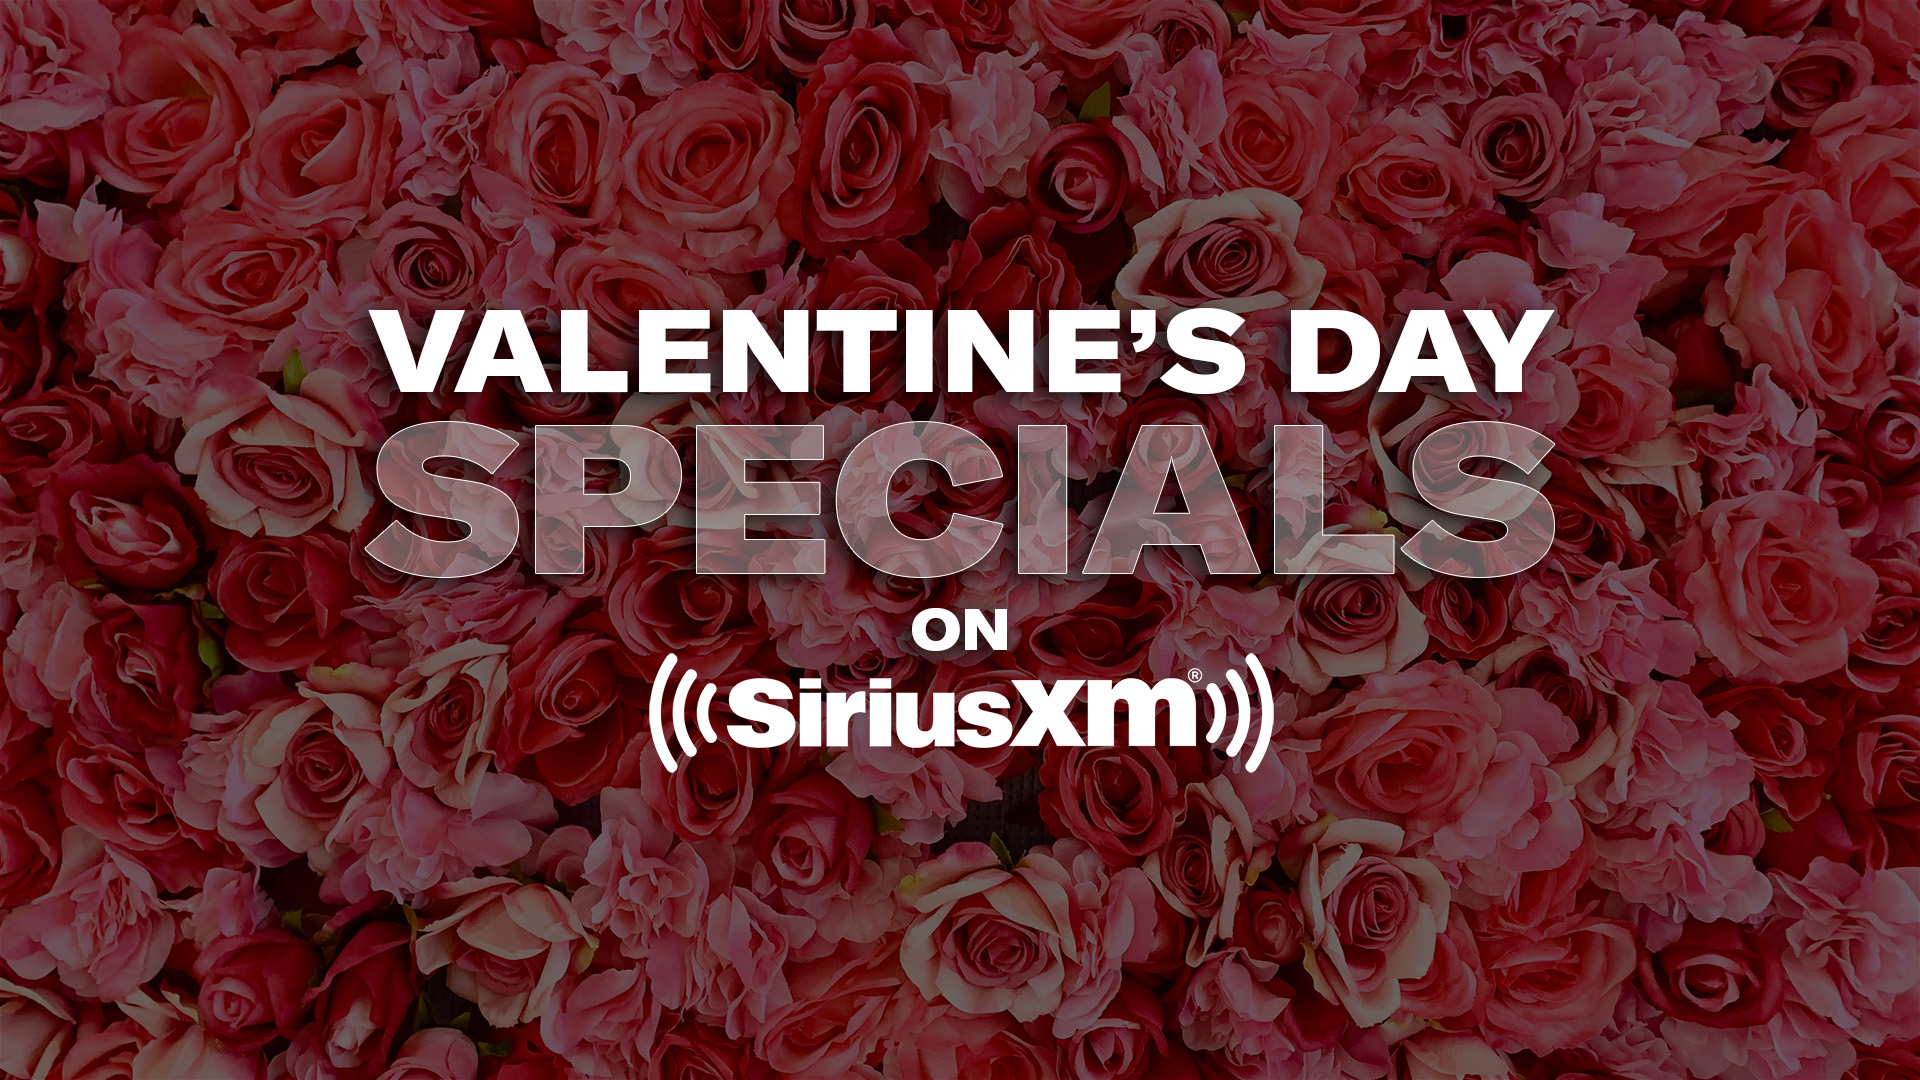 Valentine's Day Specials on SiriusXM